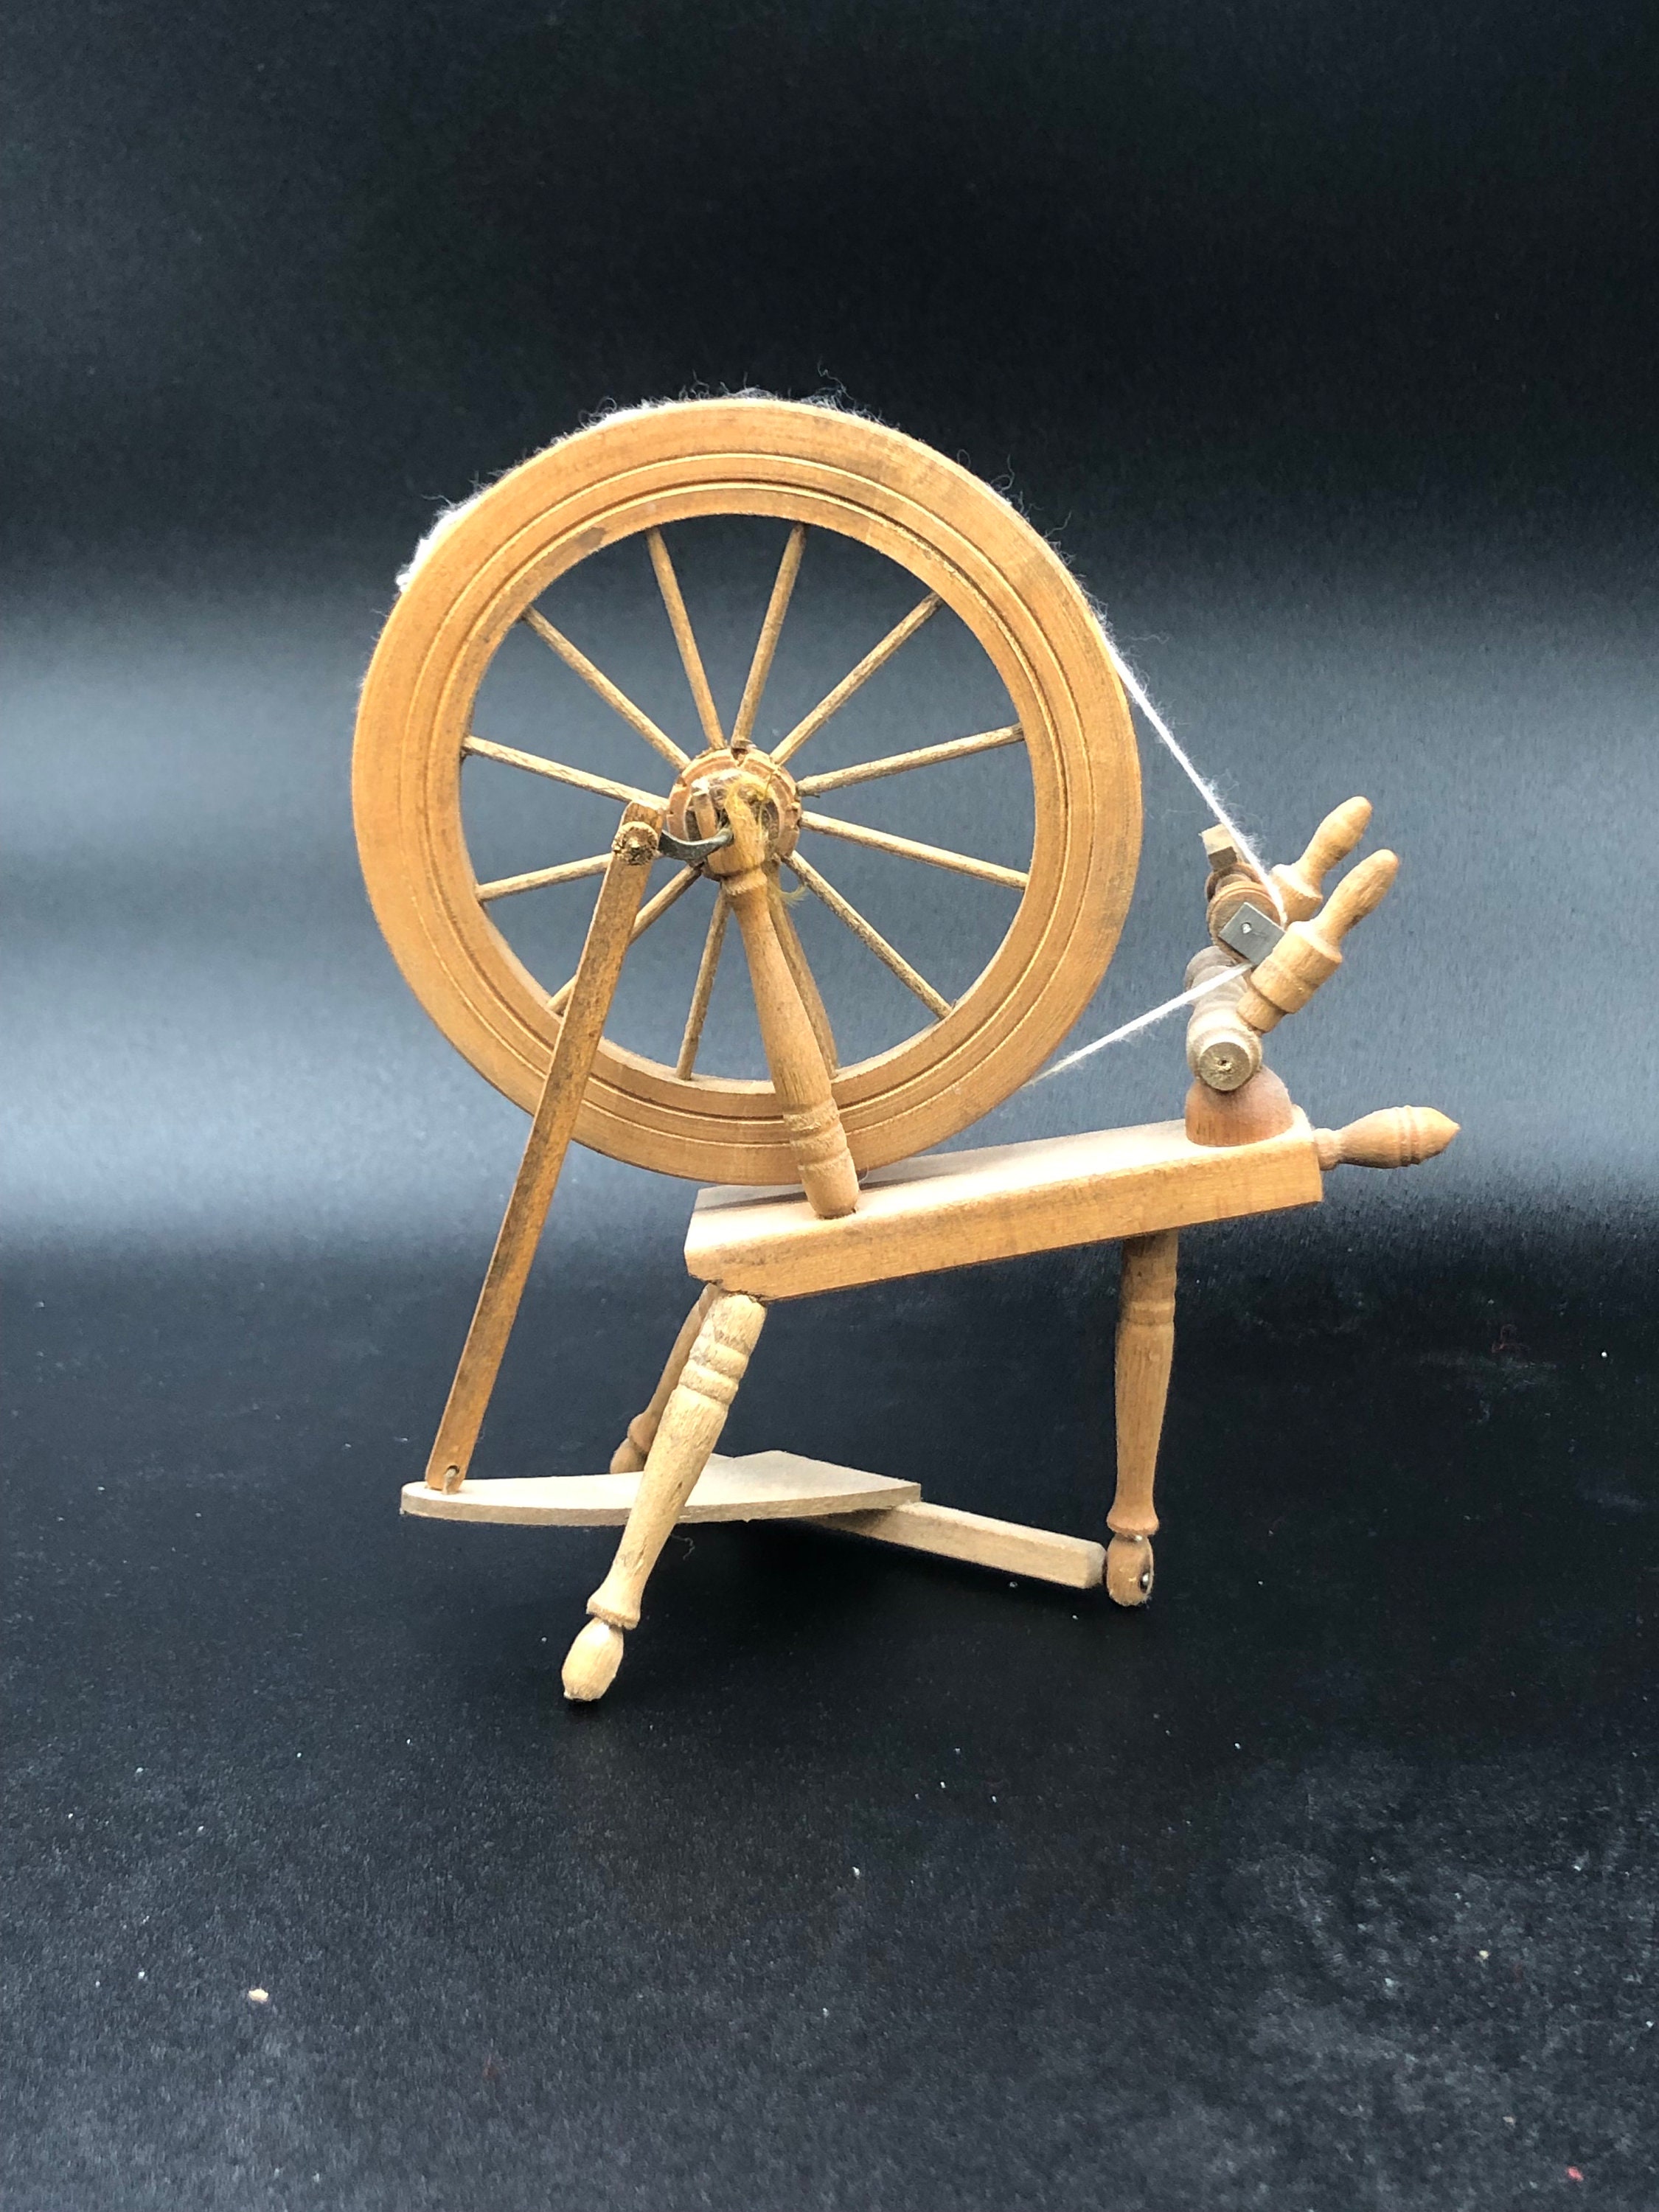 Vintage Spinning Wheel, Wooden Spinning Wheel, Handmade Spinning